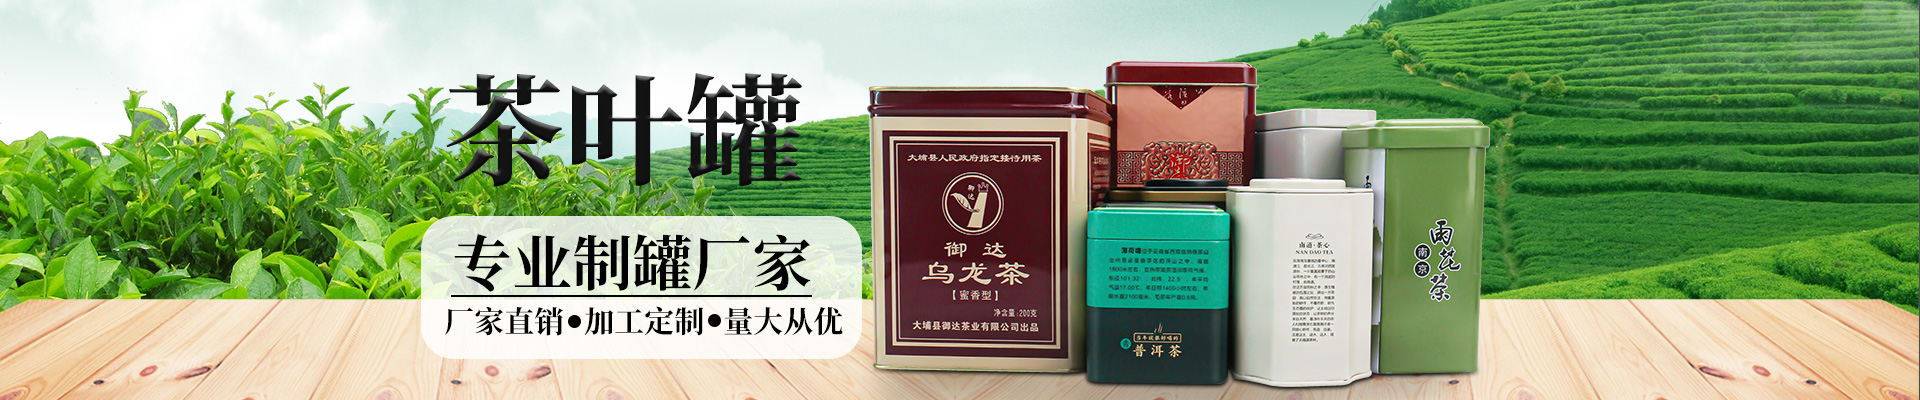 茶叶铁盒茶叶欧冠体育app下载【股份】有限公司小横图